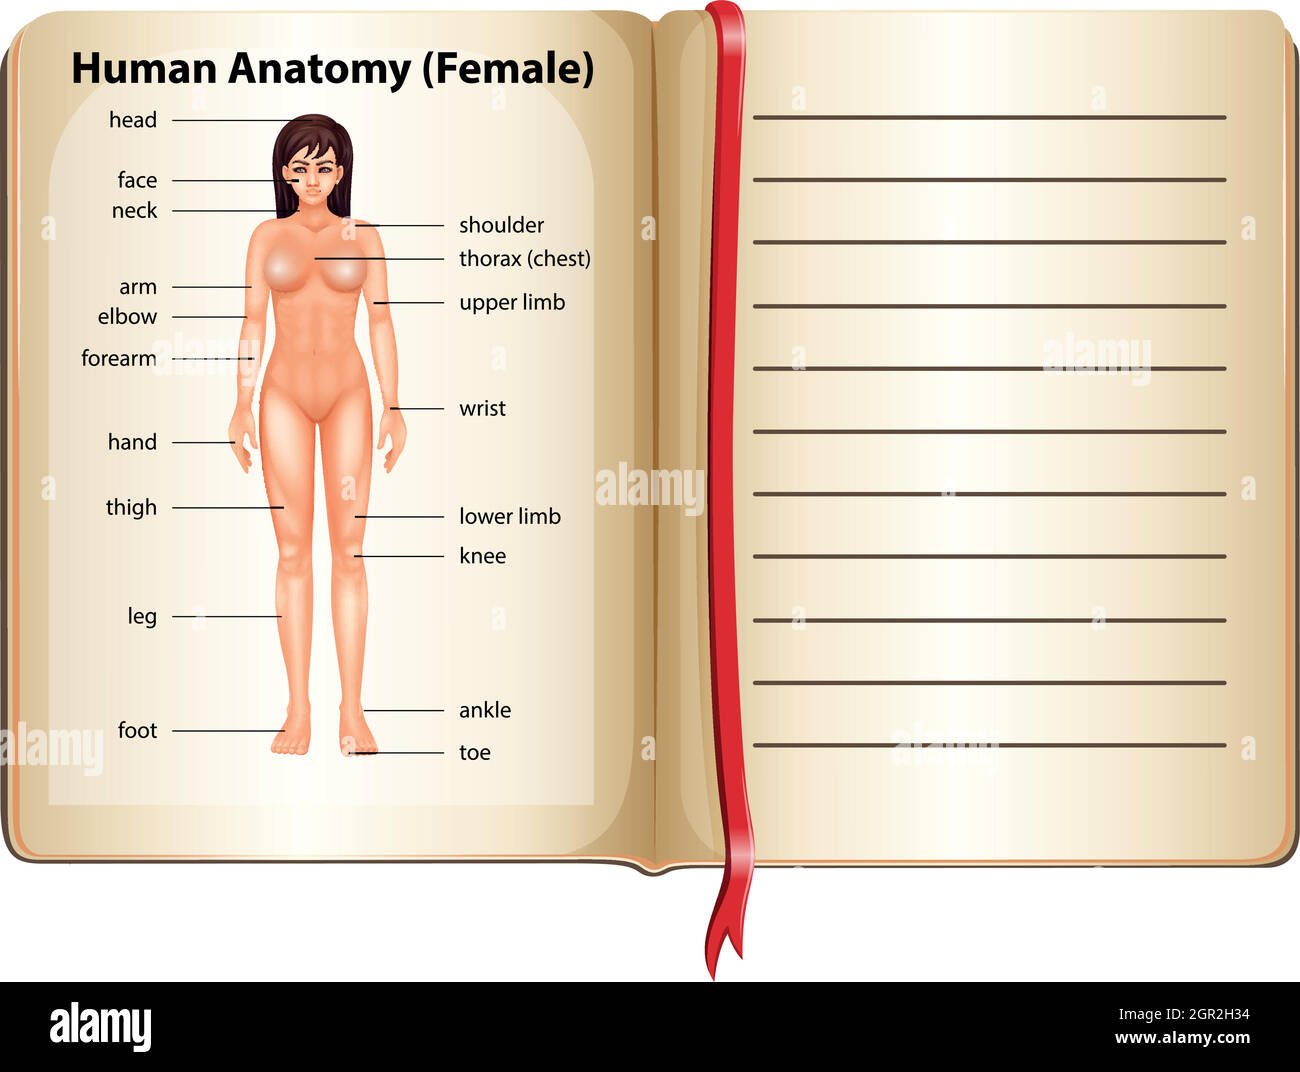 Anatomie humaine de la femme Illustration de Vecteur